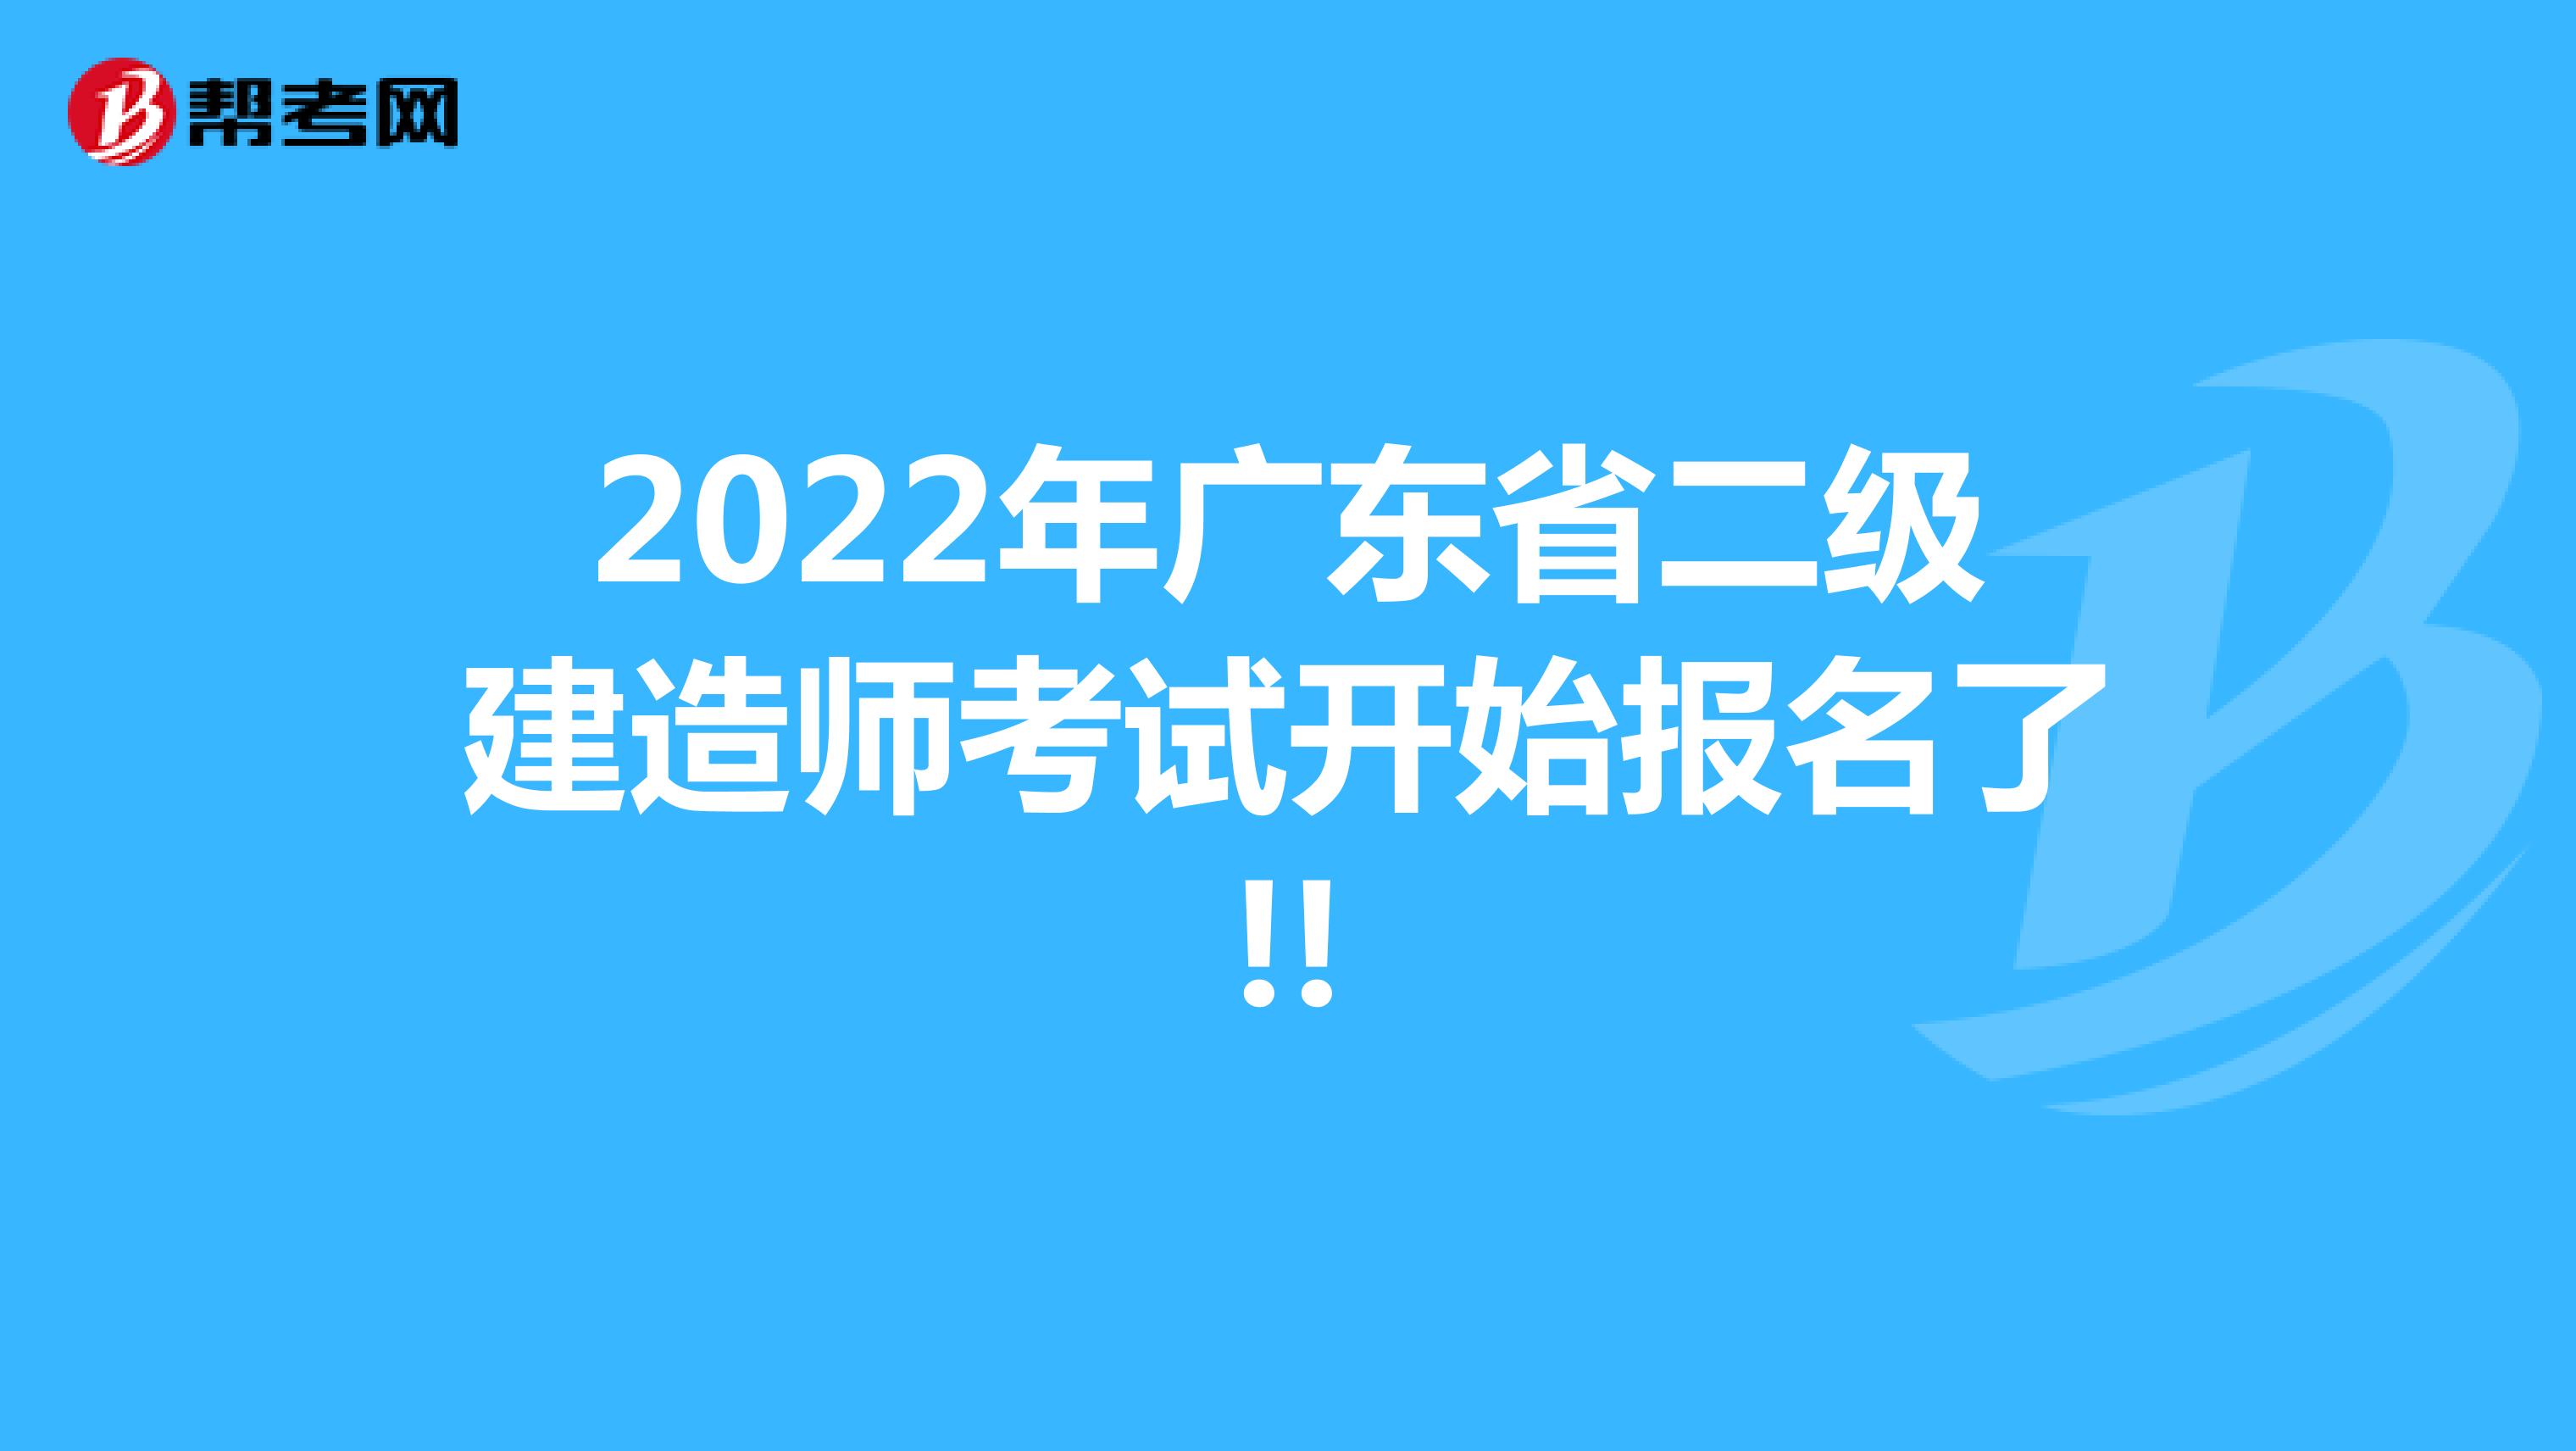 2022年广东省二级建造师考试开始报名了!!